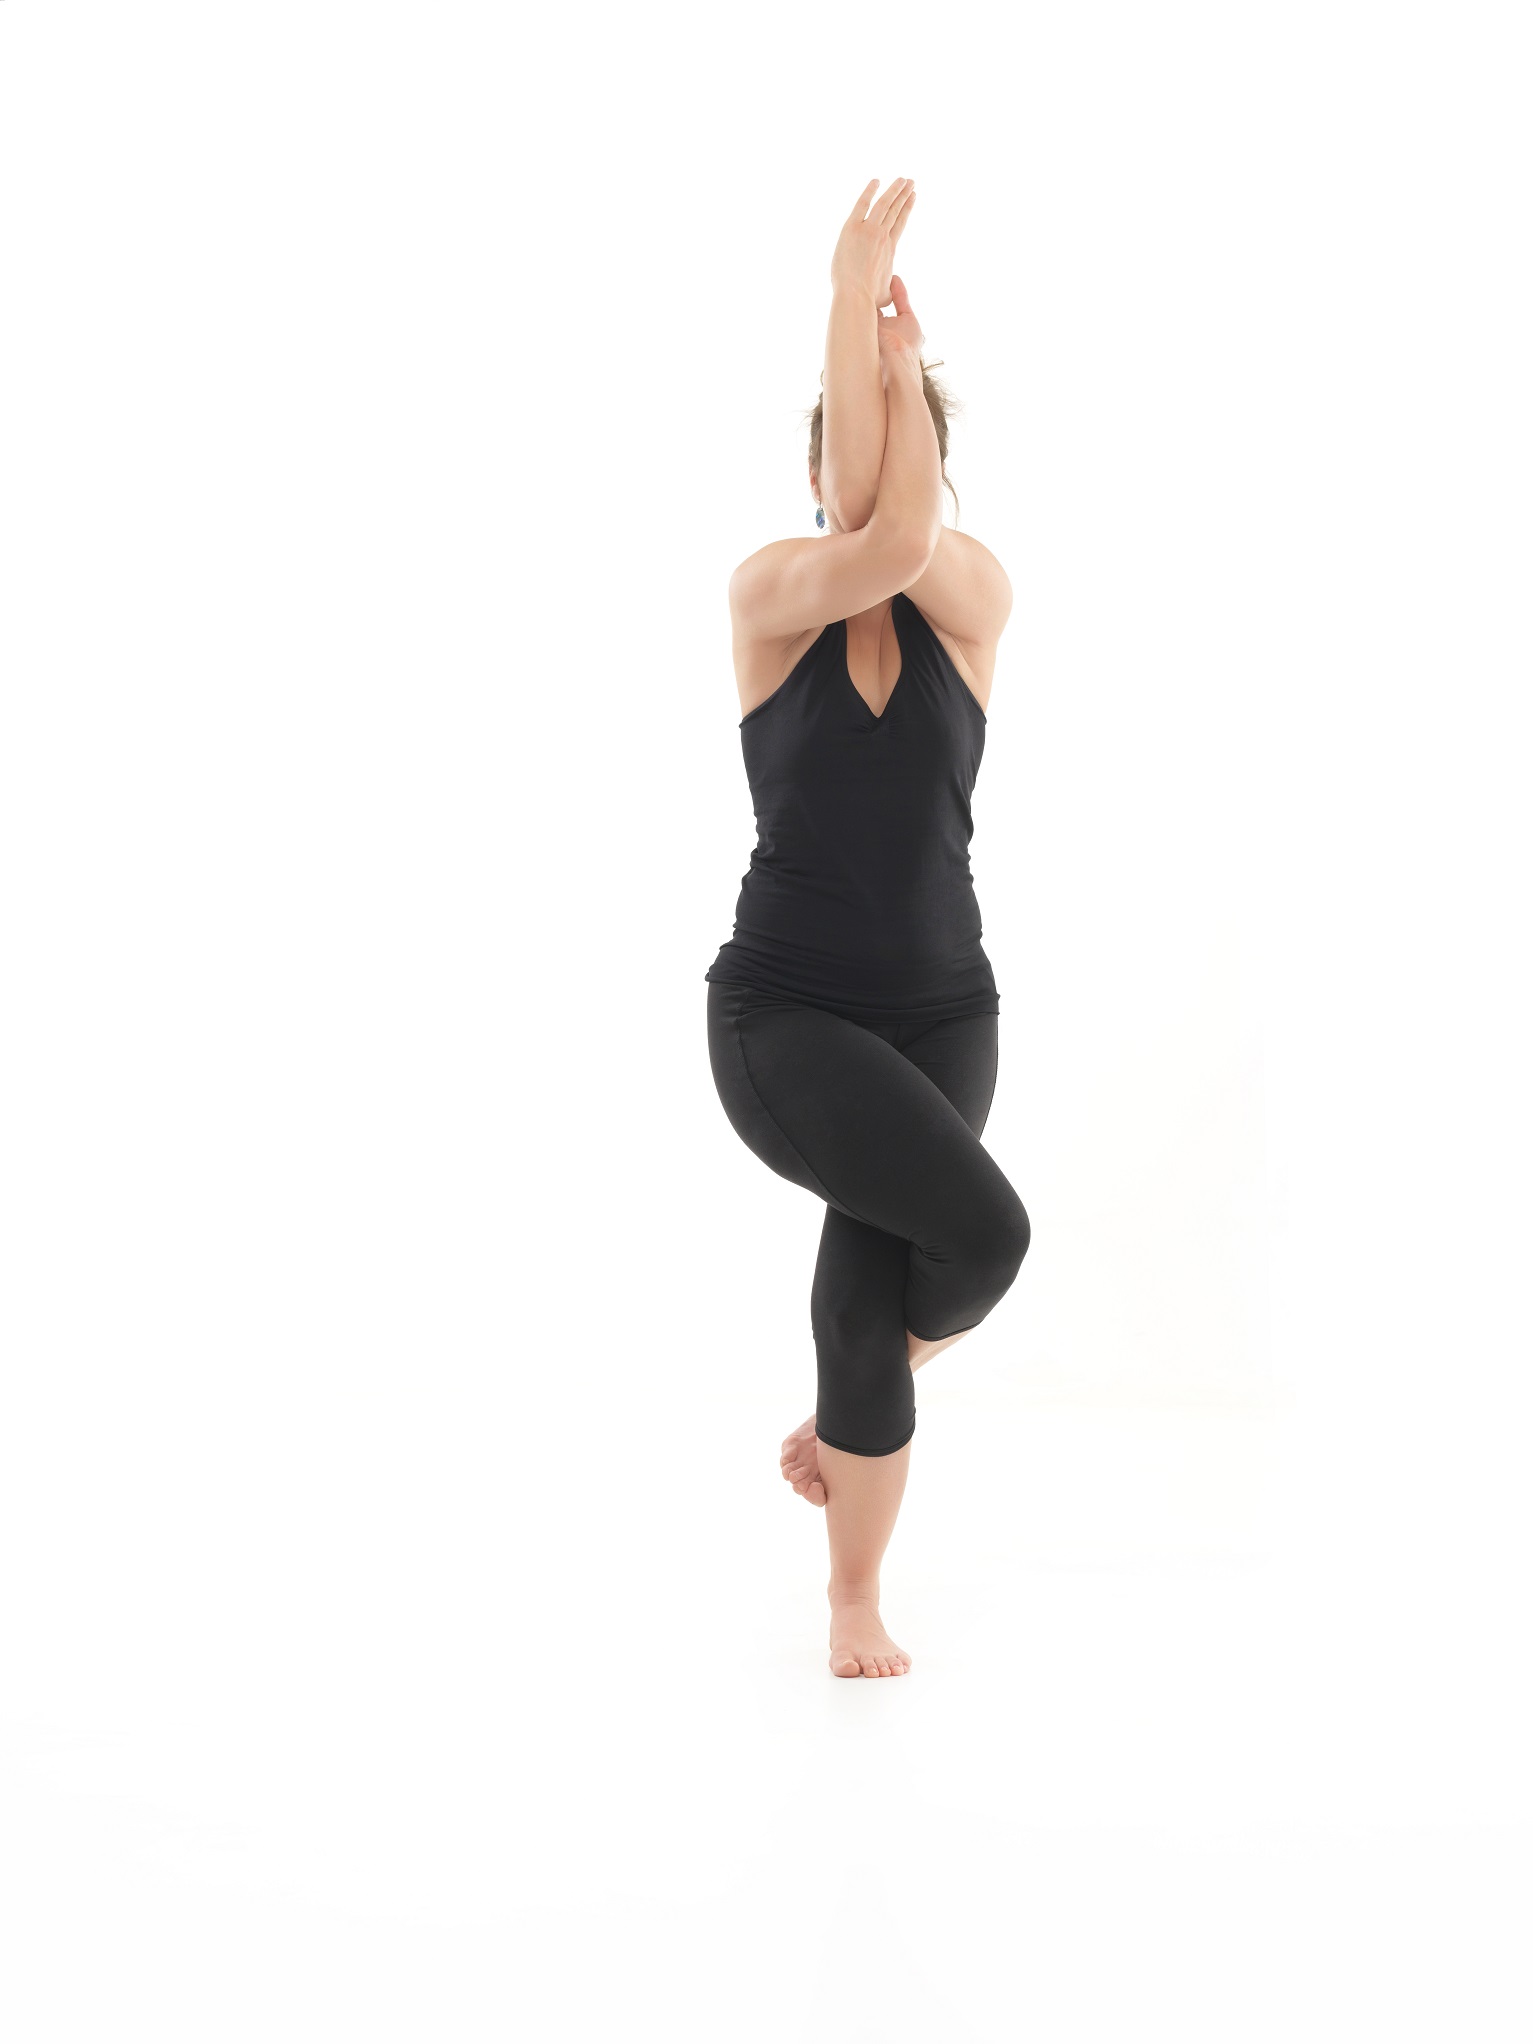 balance yoga pose demonstration